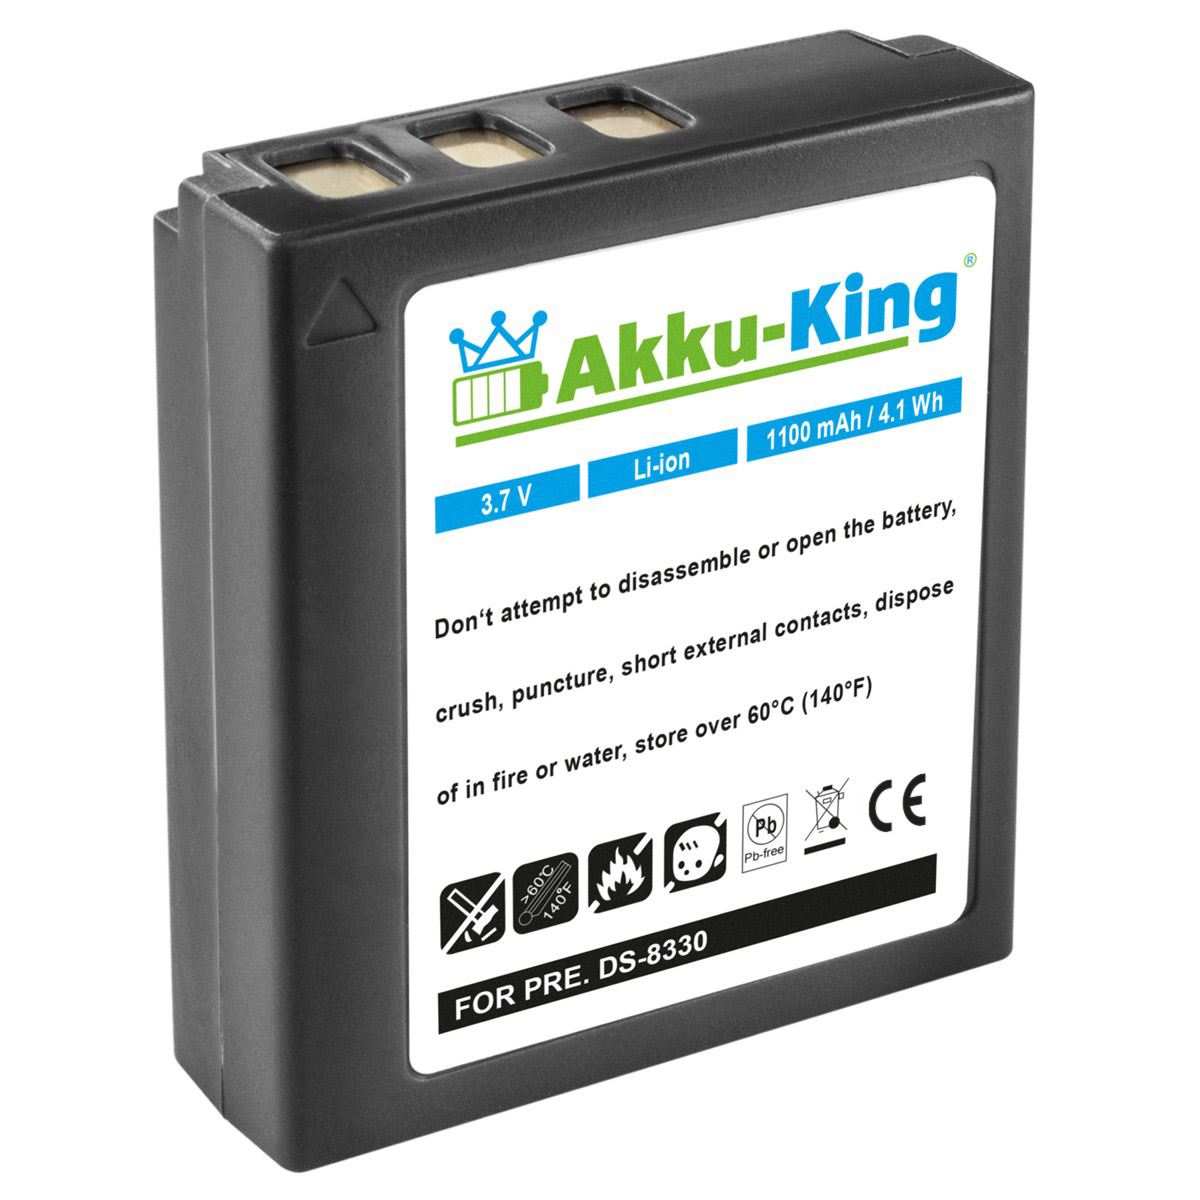 AKKU-KING Akku kompatibel DC-8300 Li-Ion mit 1100mAh Medion Kamera-Akku, Volt, 3.7